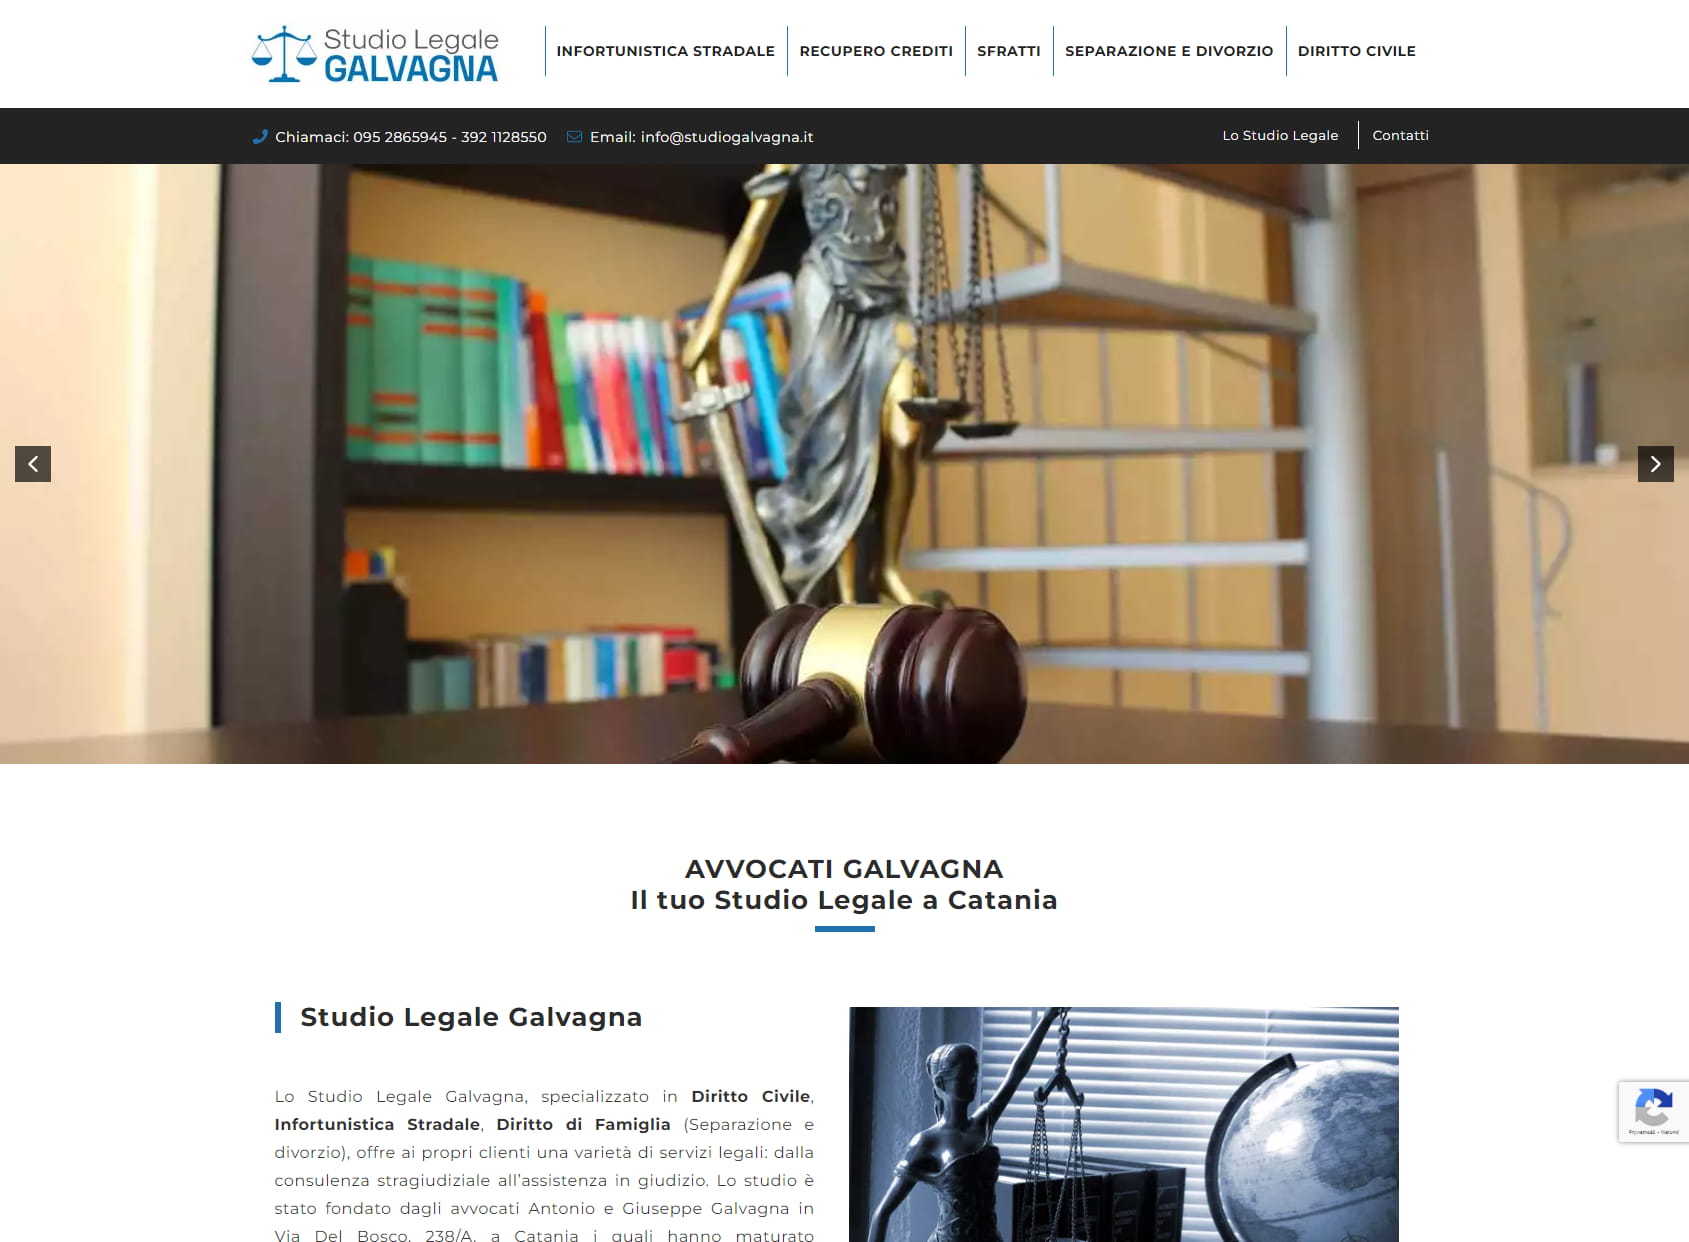 Studio Legale Galvagna - Avvocati Catania